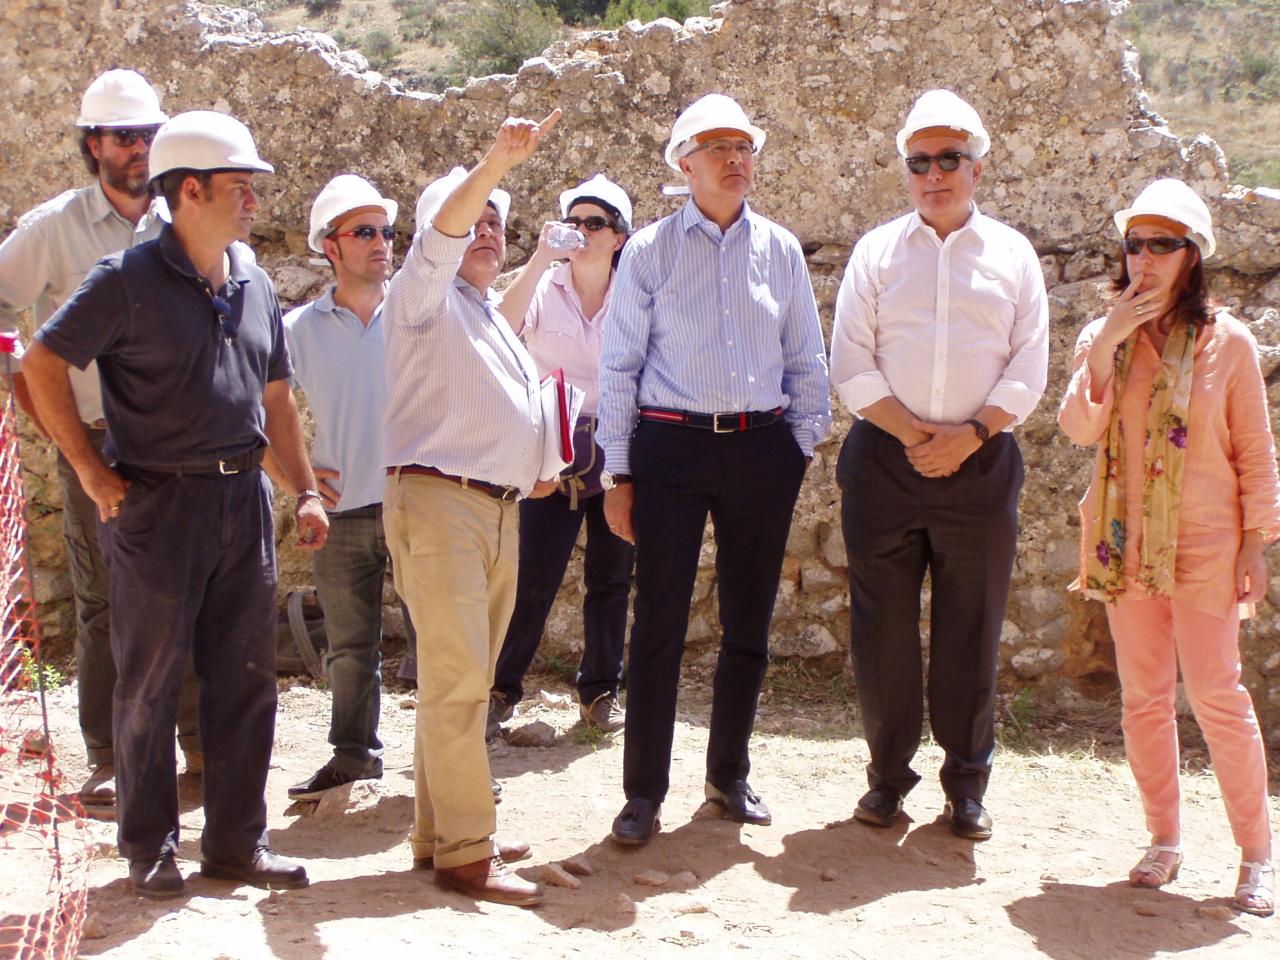 El Castilla de Ucero (Soria) participa en el Programa nacional de visitas guiadas a bienes culturales en proceso de restauración, que comienzan el sábado 19 de julio de 2014